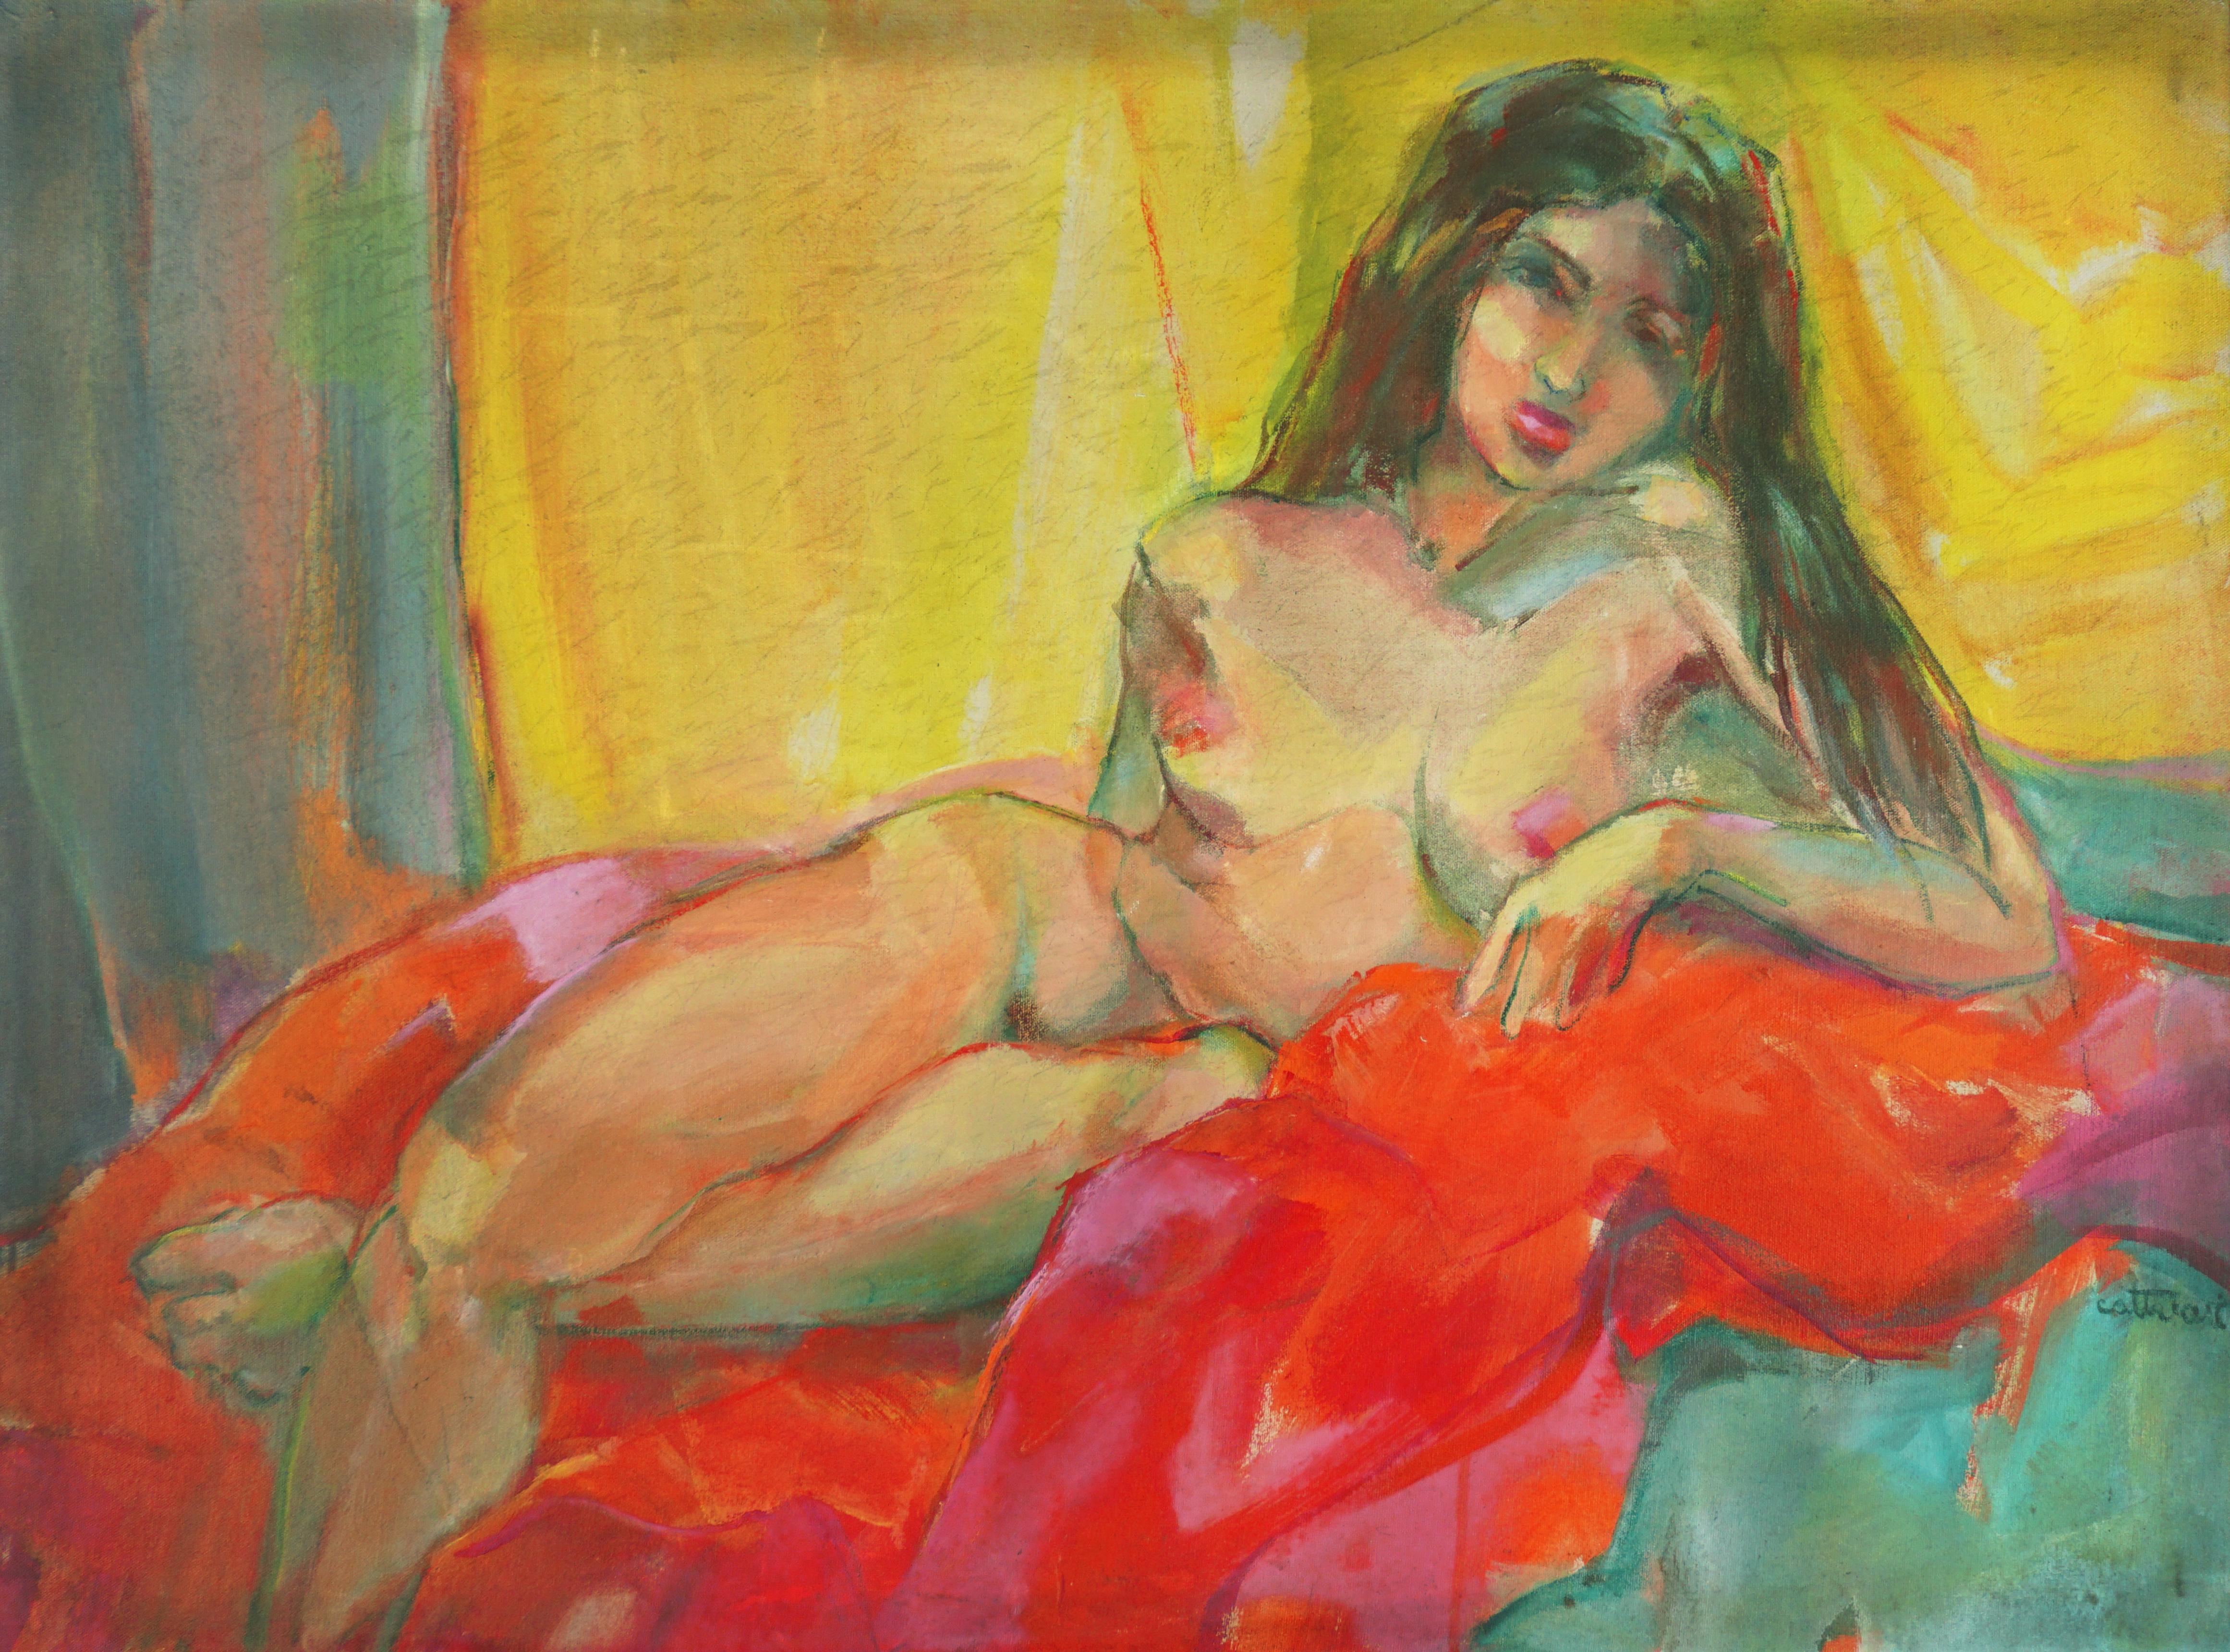 Liegende liegende Frau, Mid-Century Bay Area Nude Figurative mit roter Drapierung – Painting von Marjorie Cathcart